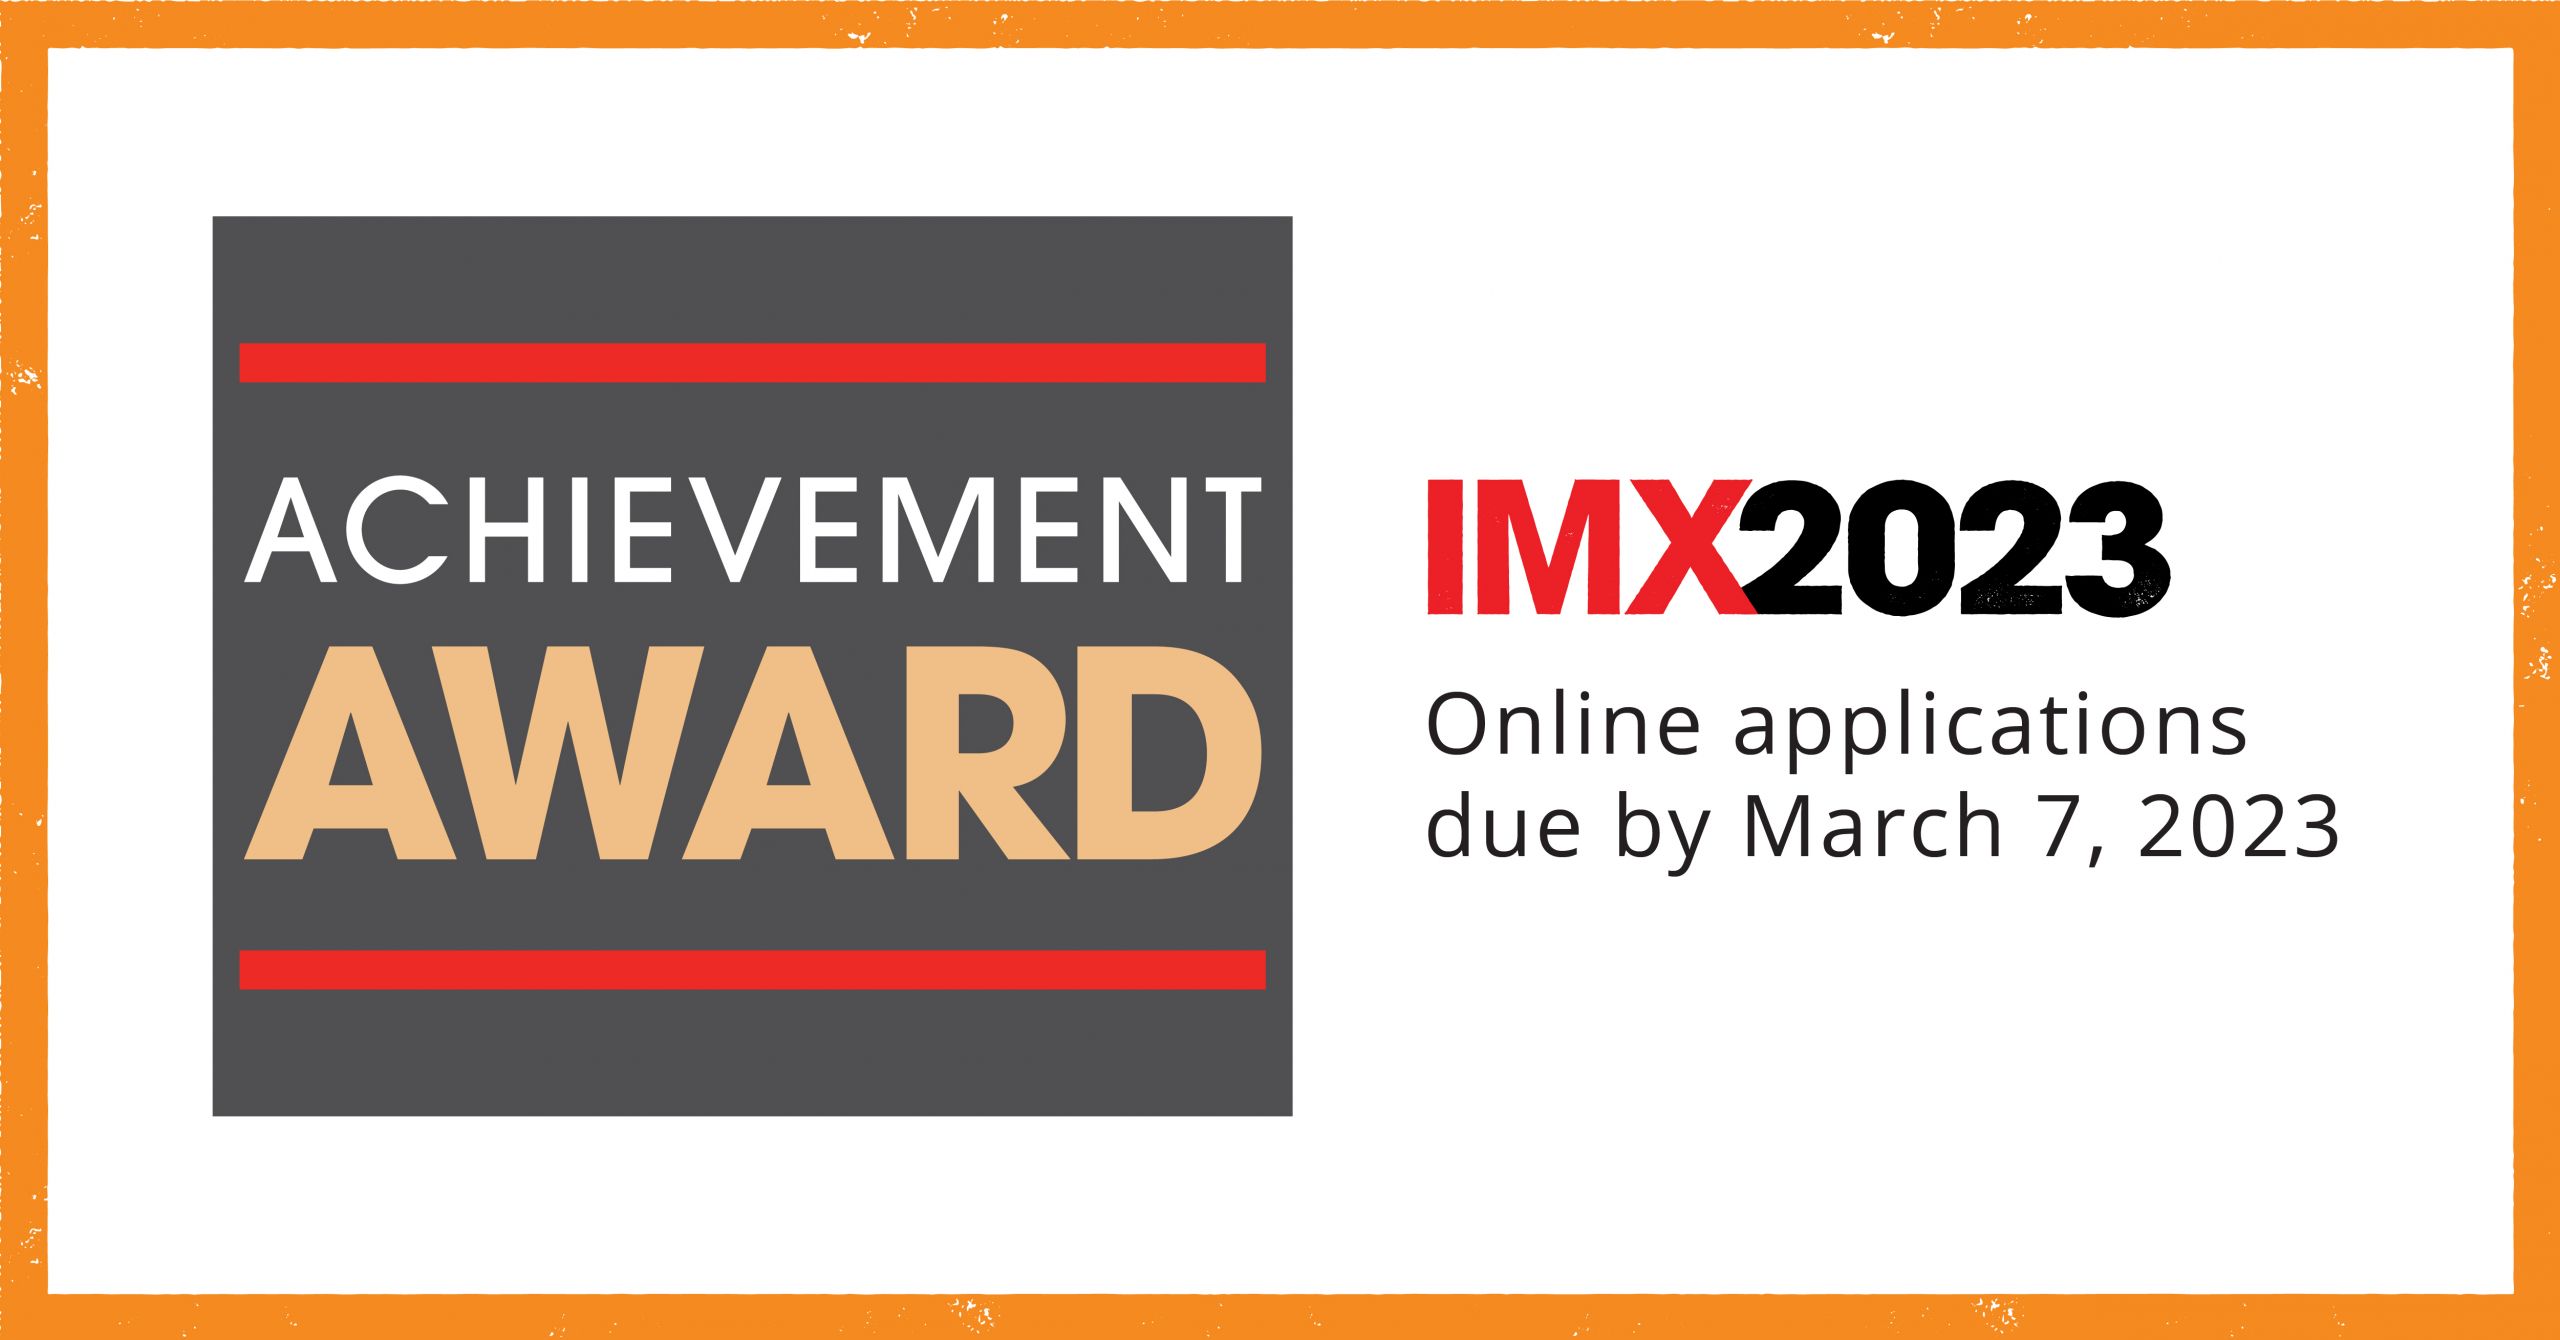 Imx Achievement Award Inland Marine Expo